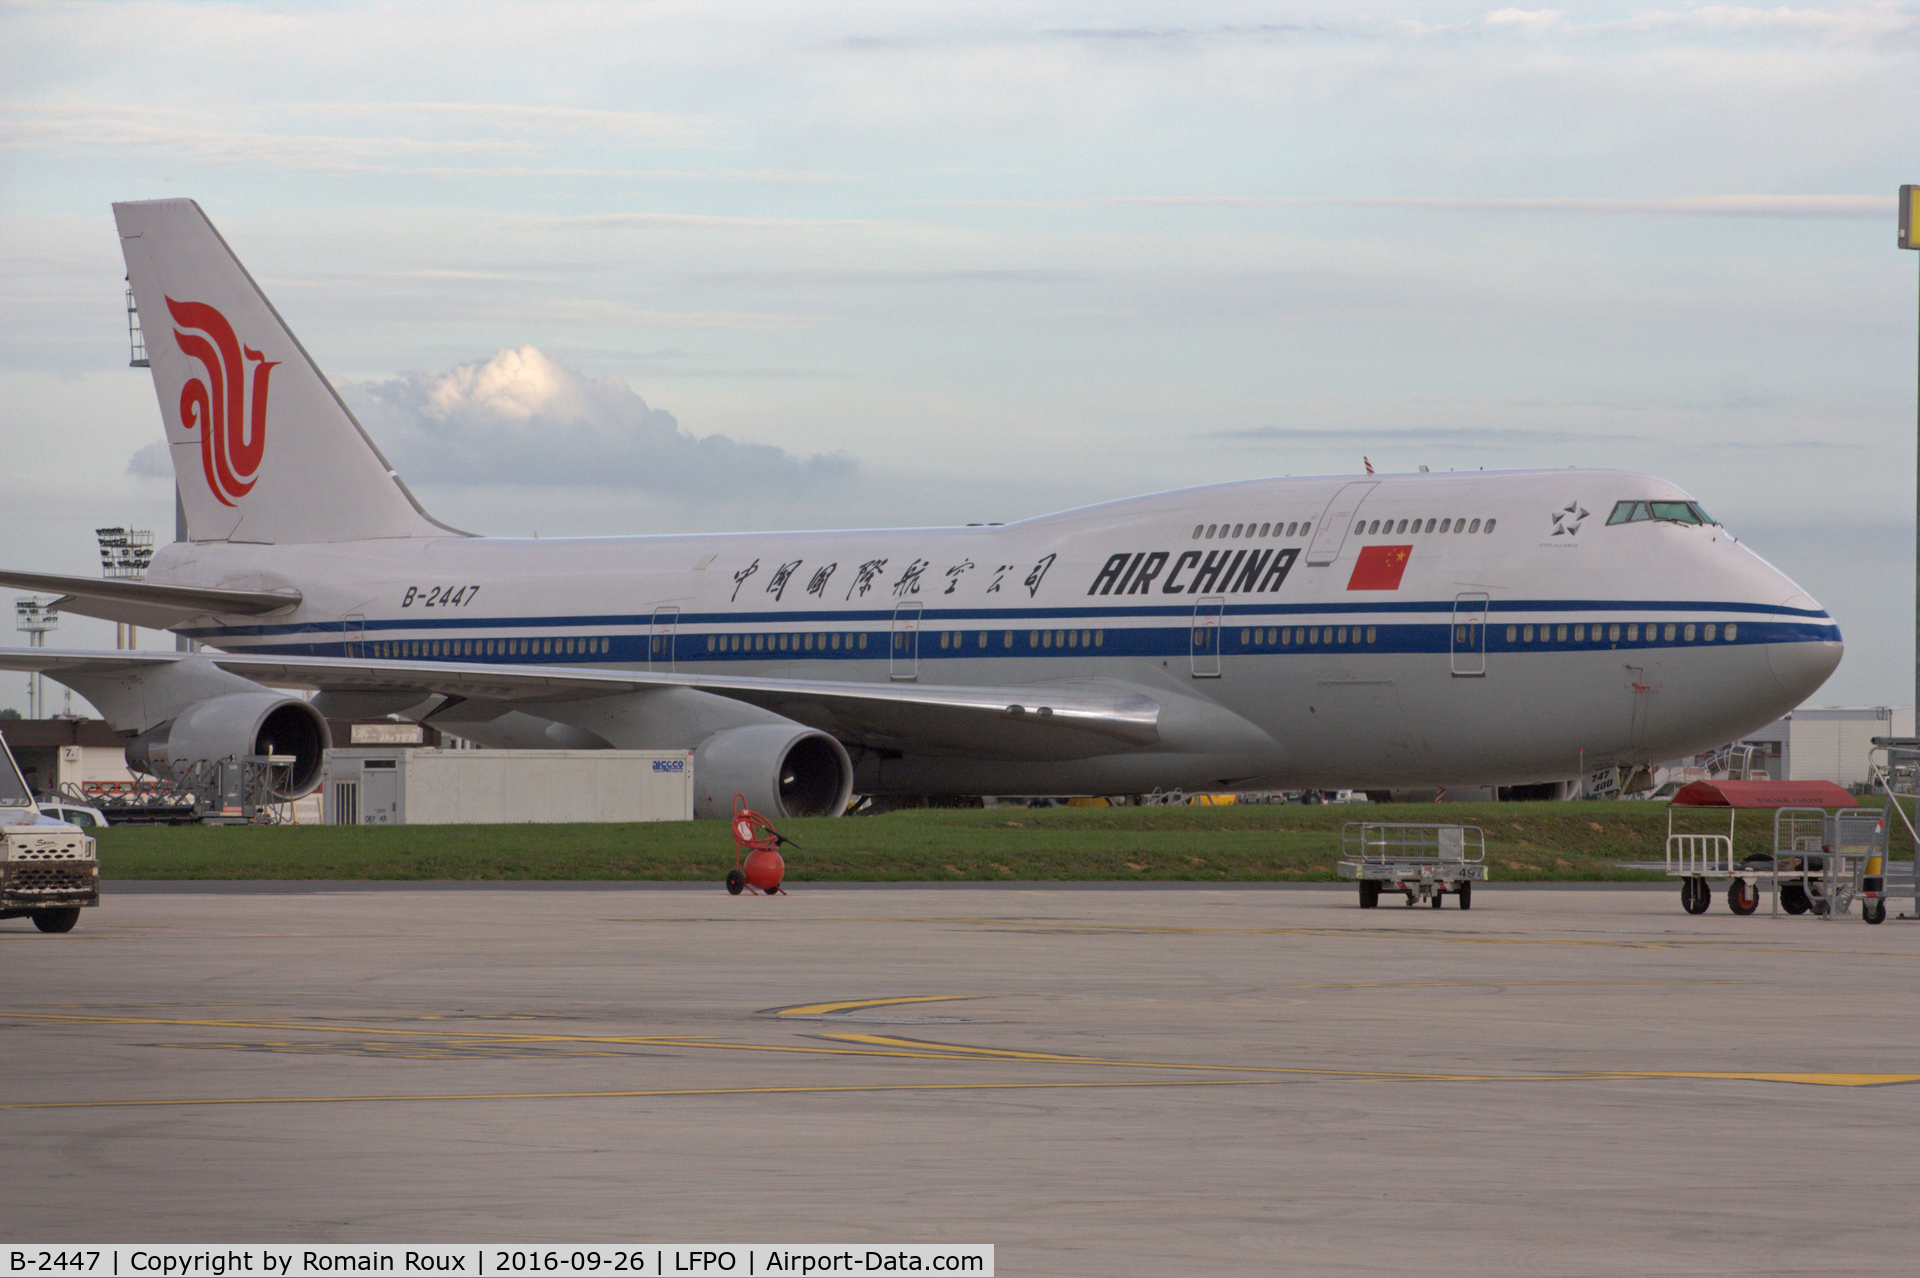 B-2447, 1995 Boeing 747-4J6 C/N 25883, Parked